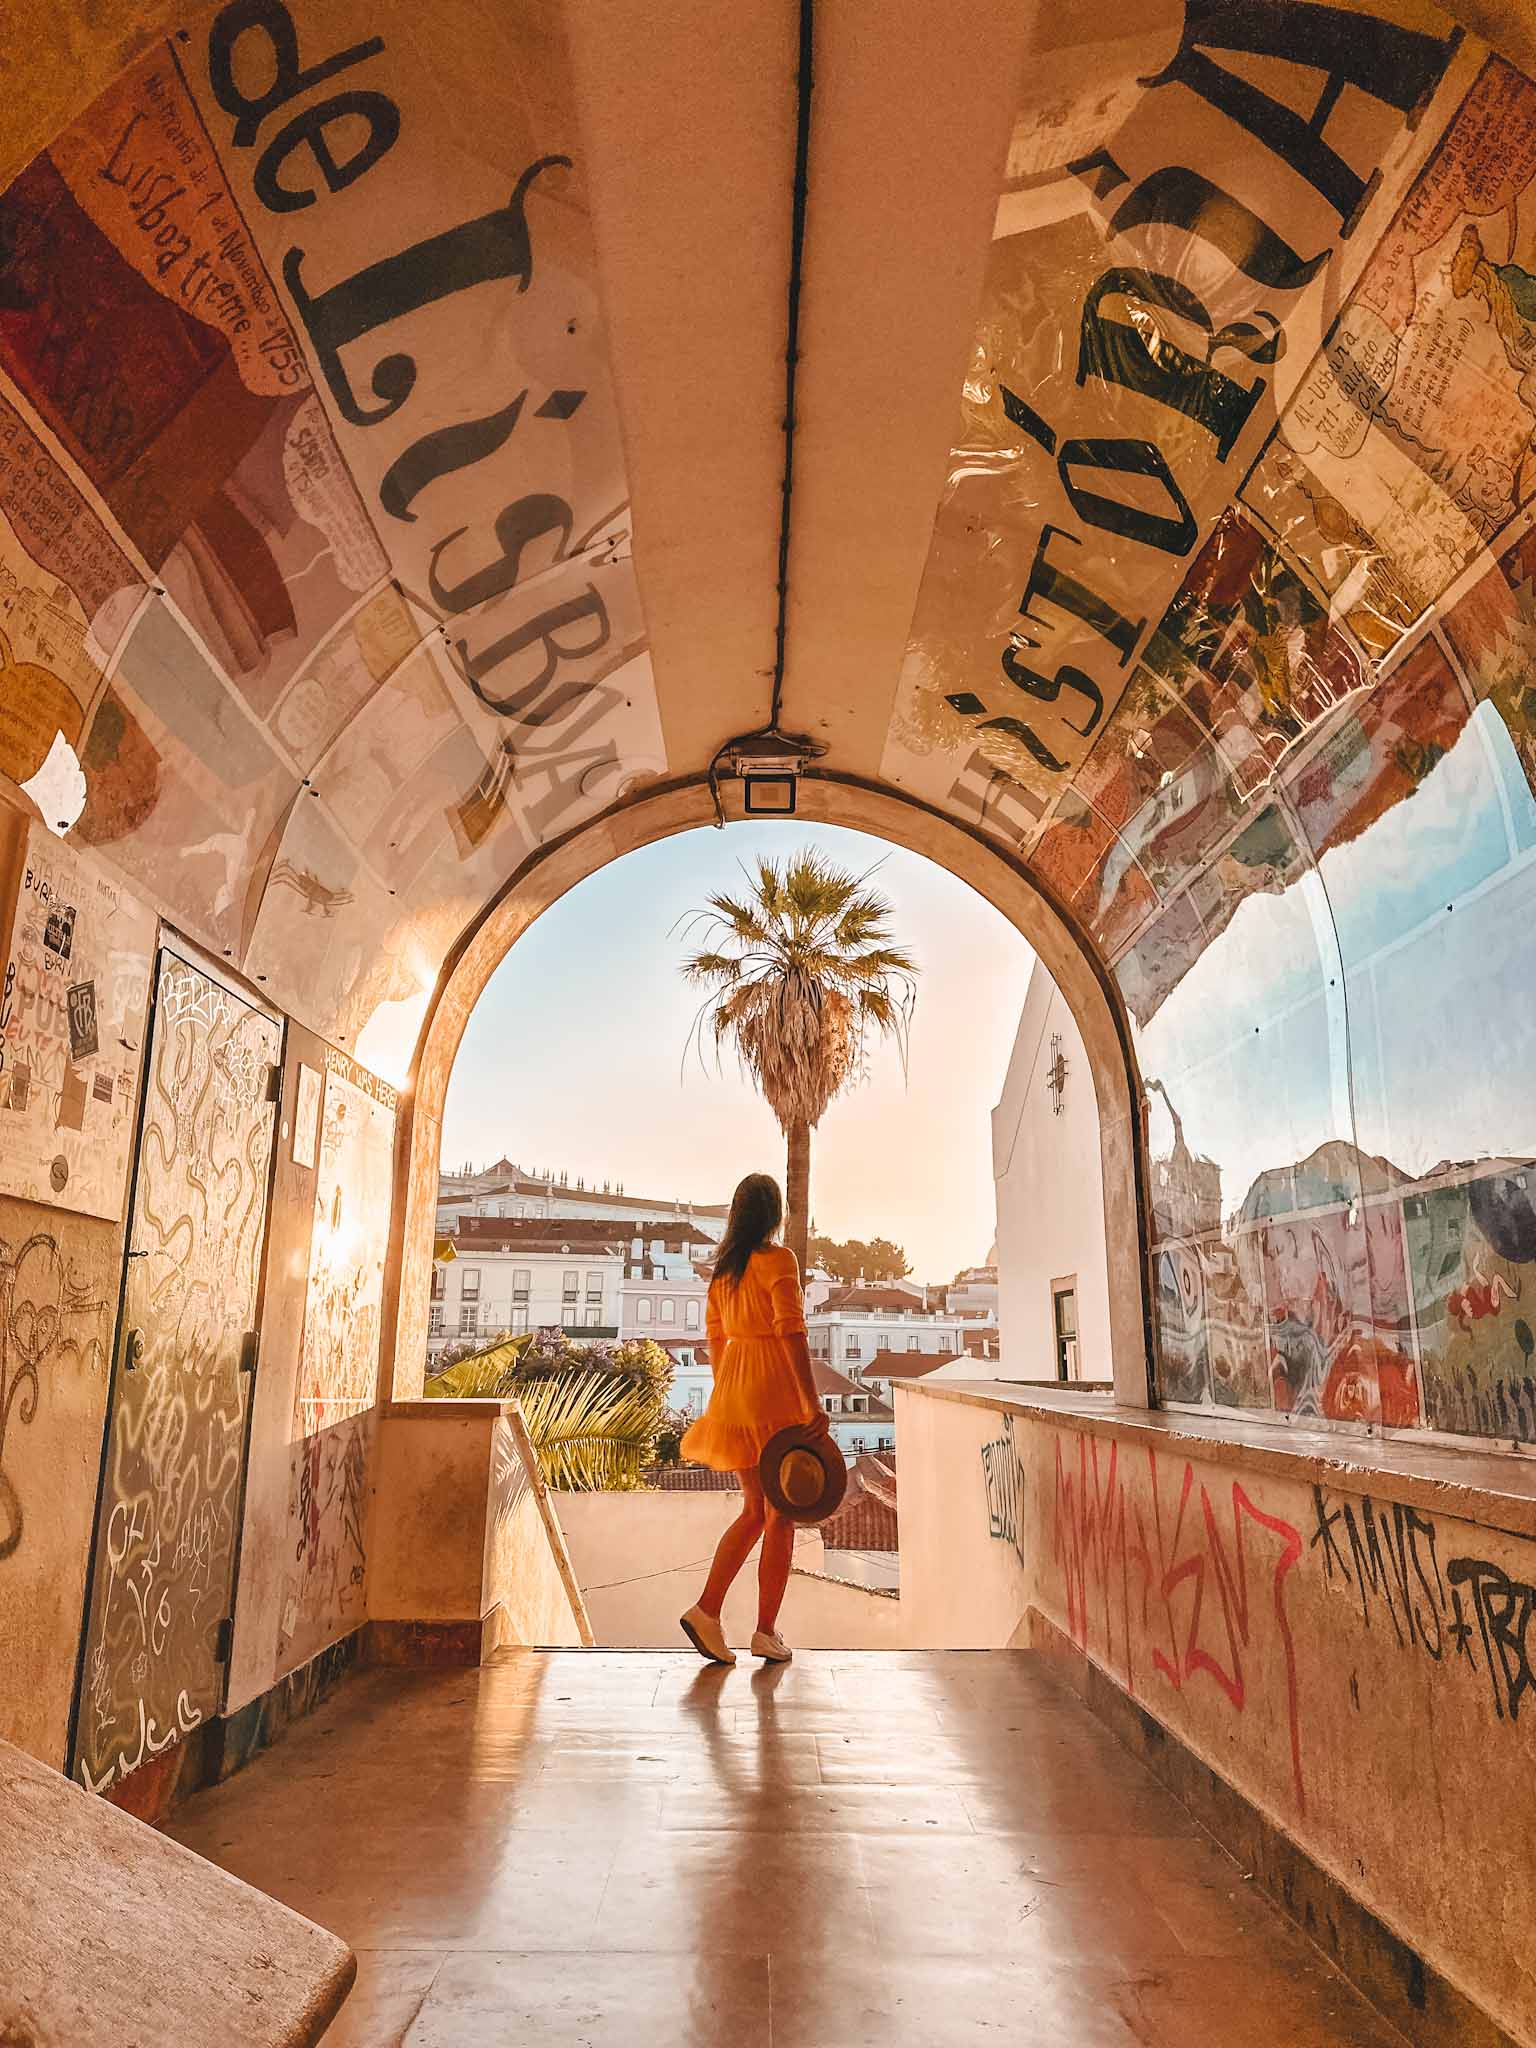 Best Instagram photo spots in Lisbon - tunnel of Lisbon history